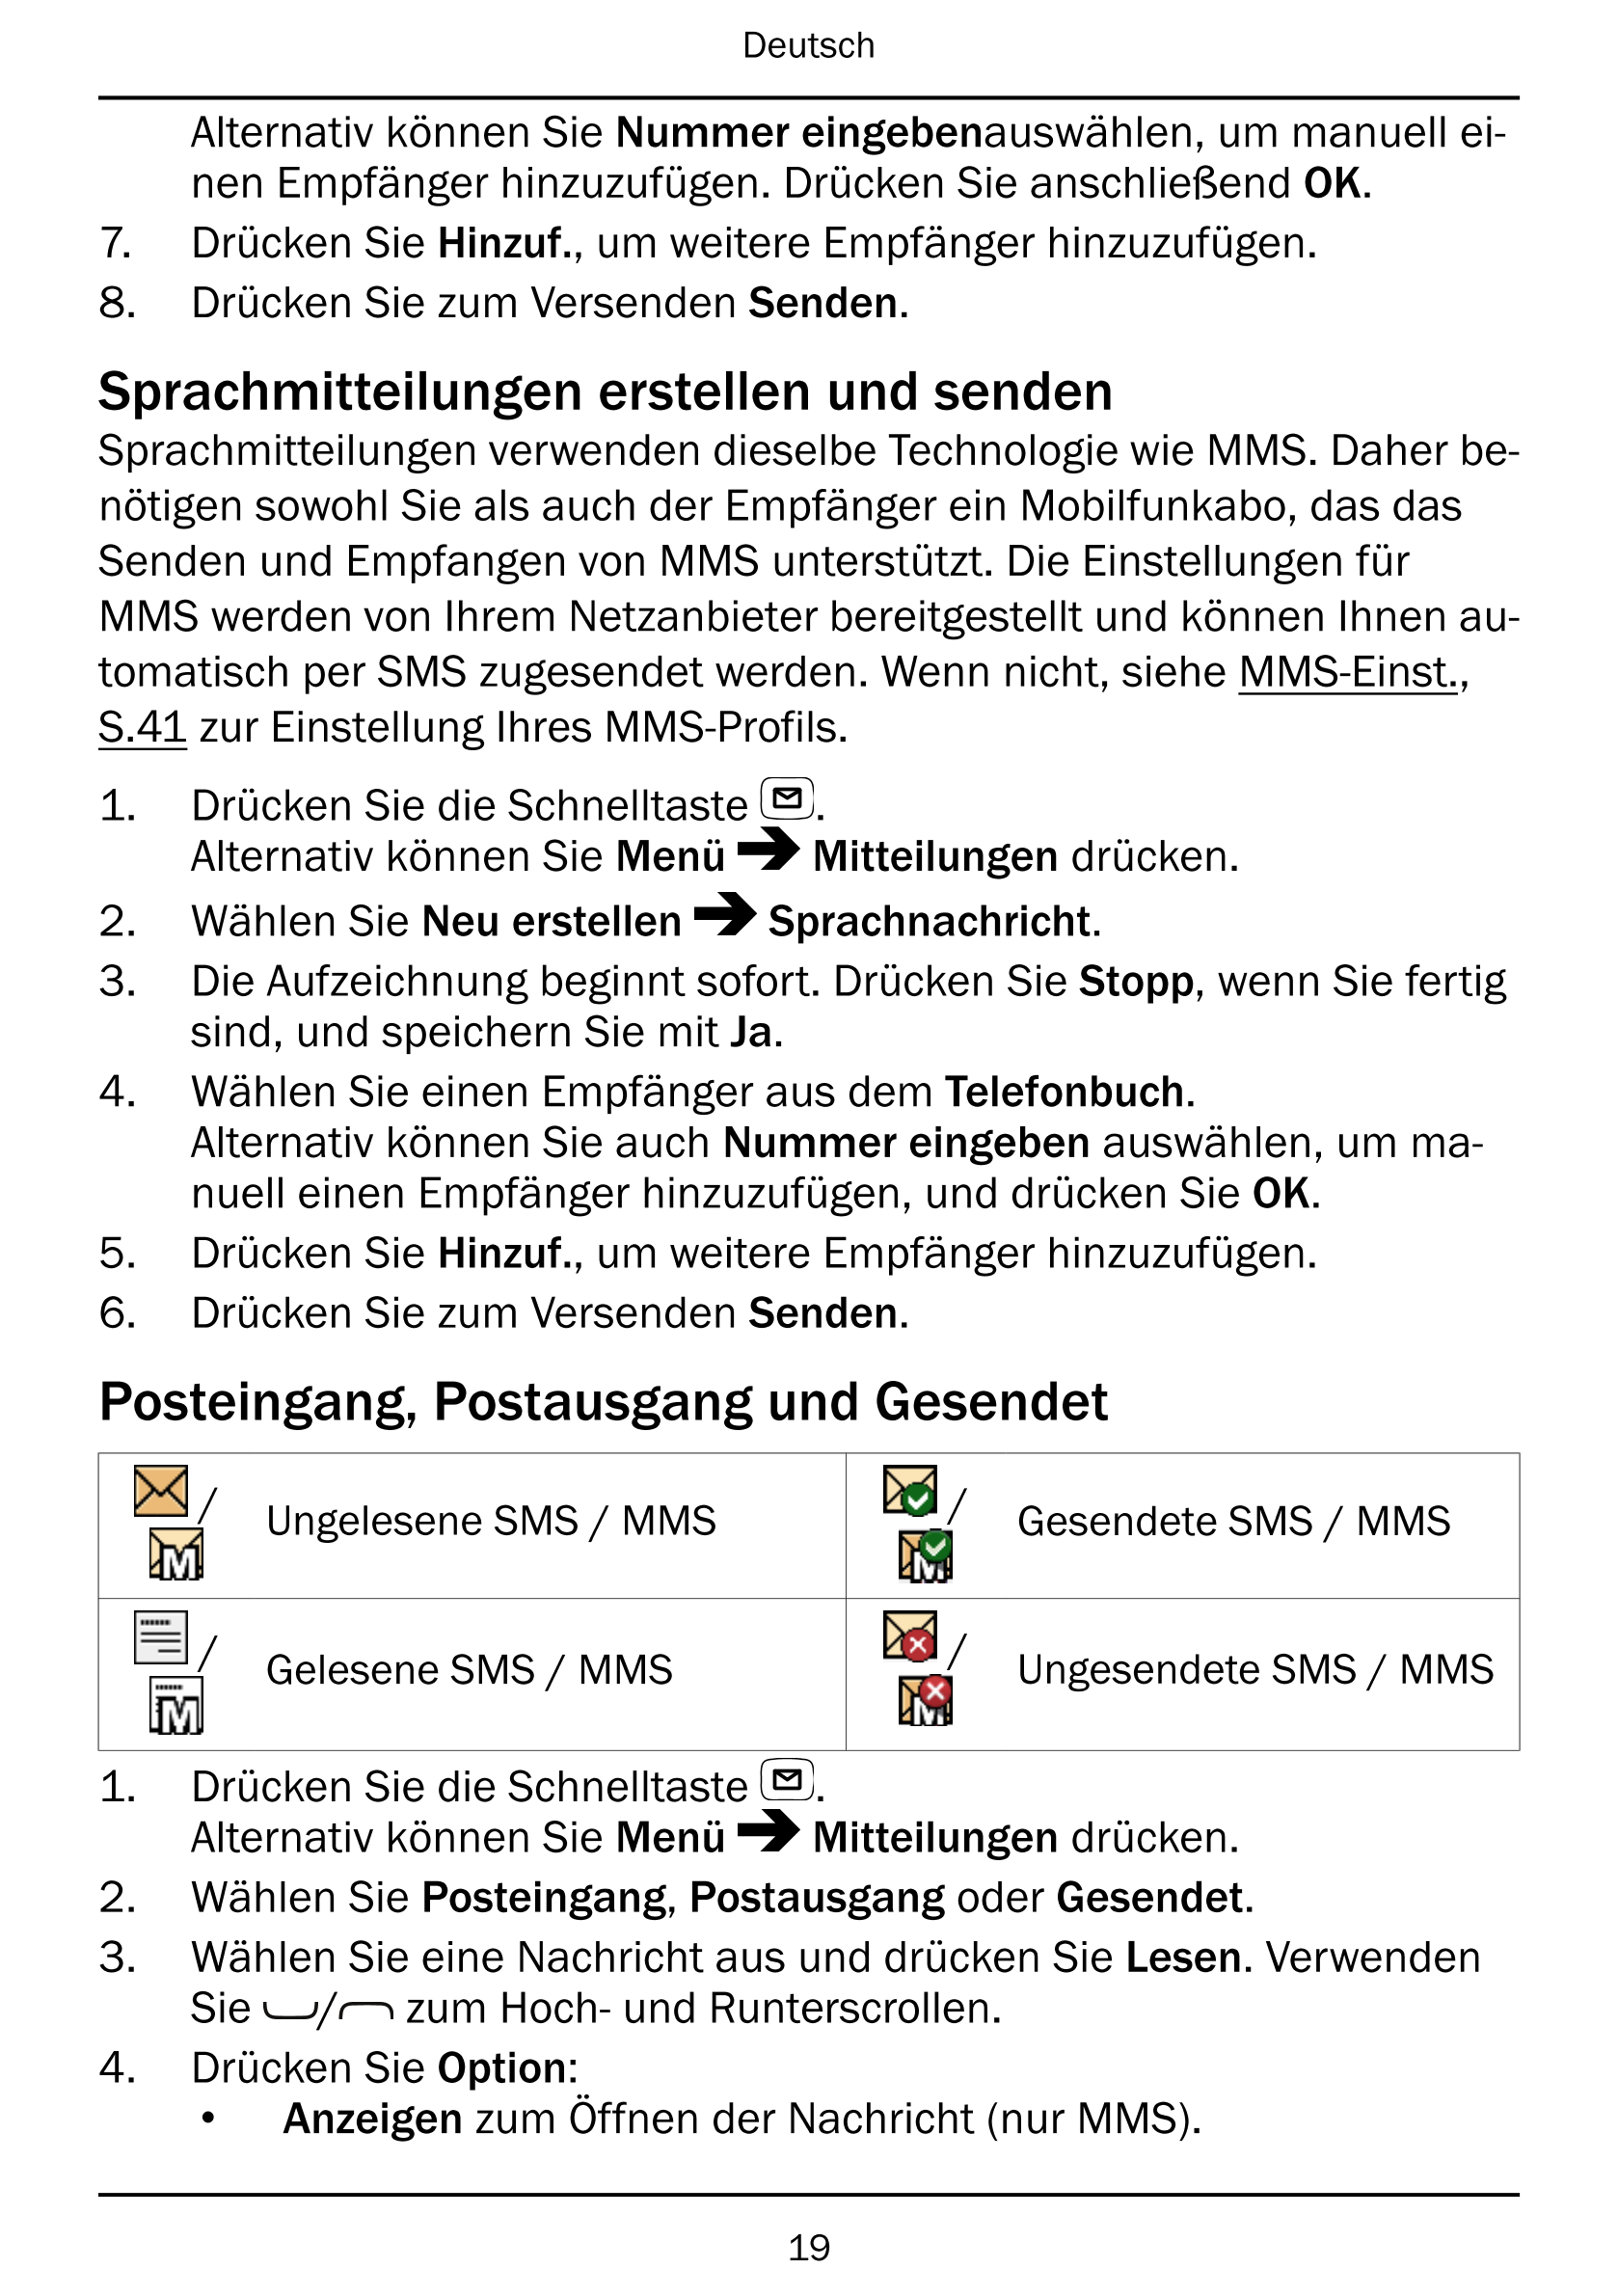 Deutsch
Alternativ können Sie Nummer eingebenauswählen, um manuell ei-
nen Empfänger hinzuzufügen. Drücken Sie anschließend OK.
